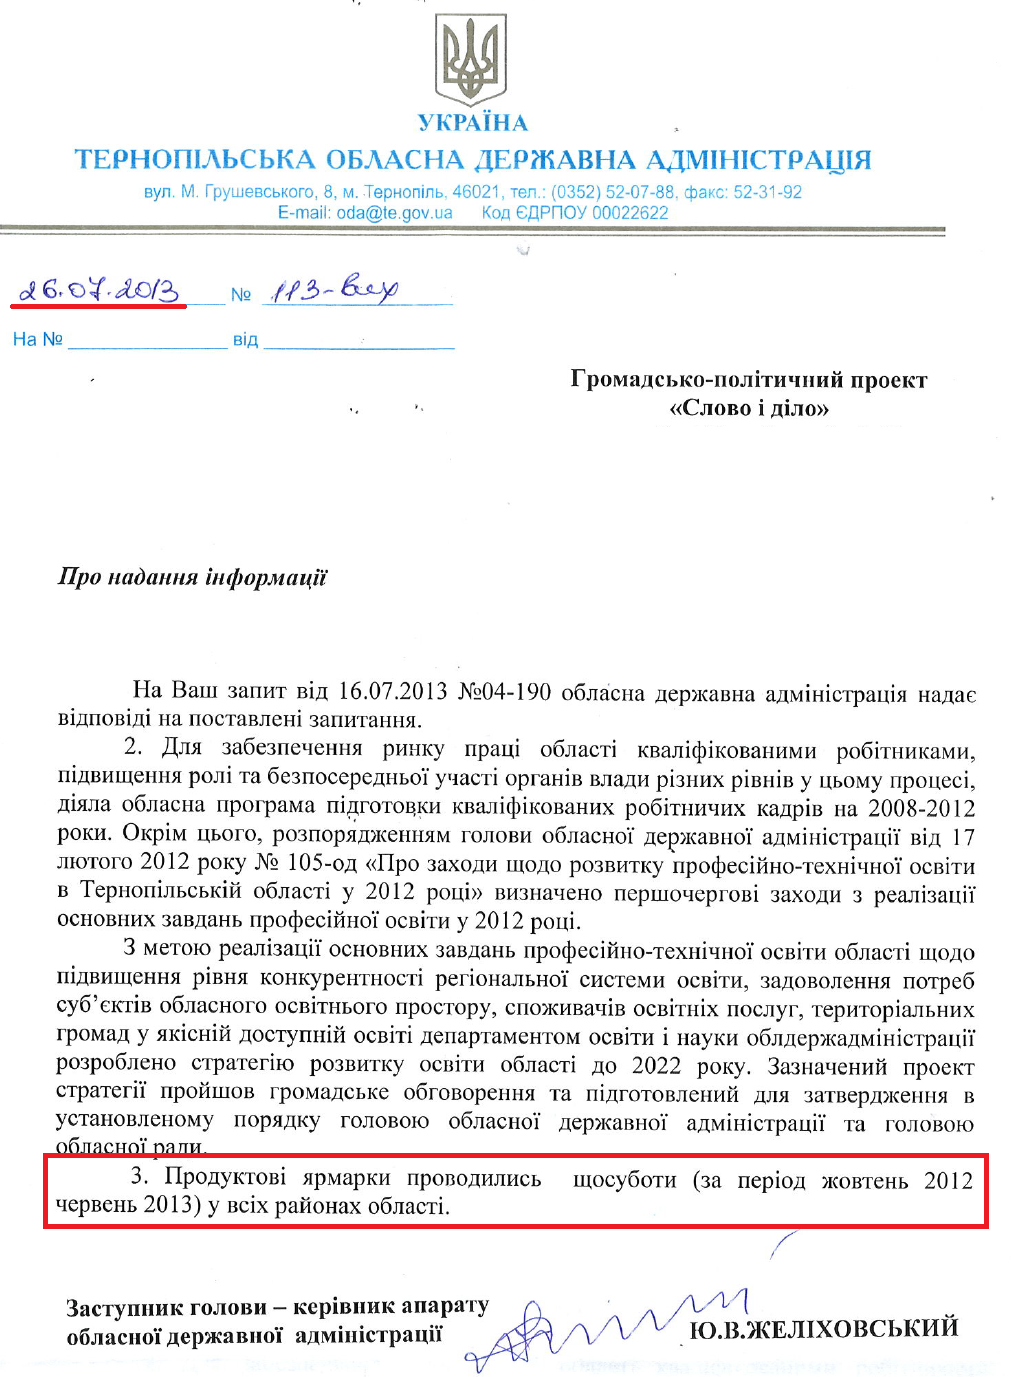 Лист Заступника голови Тернопільської ОДА Ю.В.Желіховського від 26 липня 2013 року